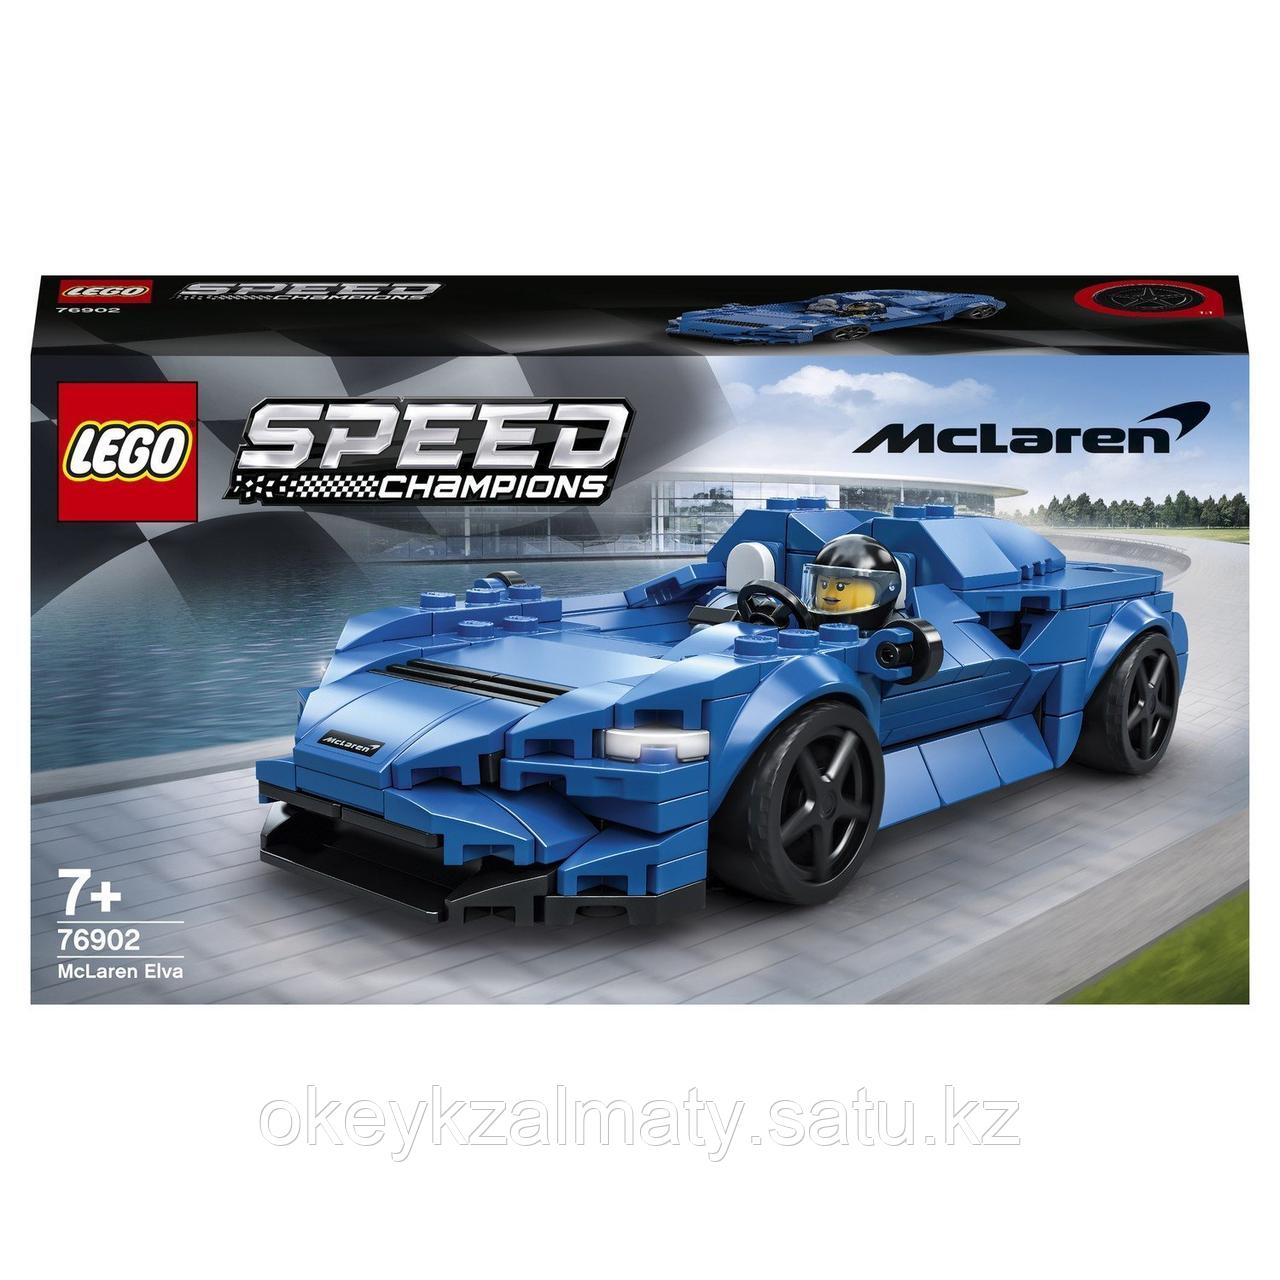 LEGO Speed Champions: McLaren Elva 76902